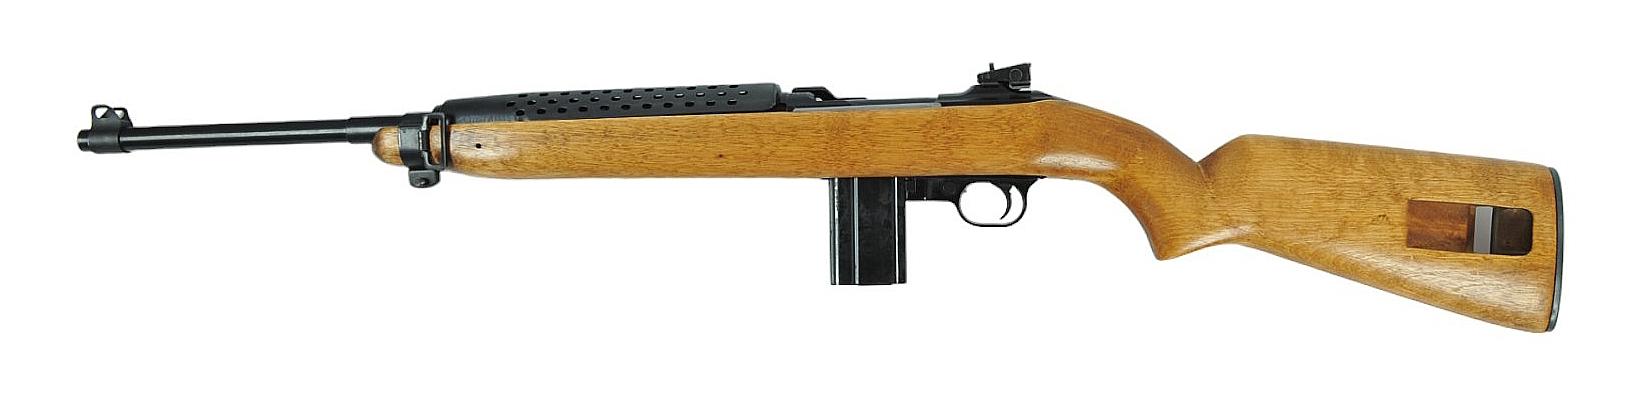 Universal M1 Carbine .30 Carbine Semi-auto Rifle FFL Required: 337773(HA1)